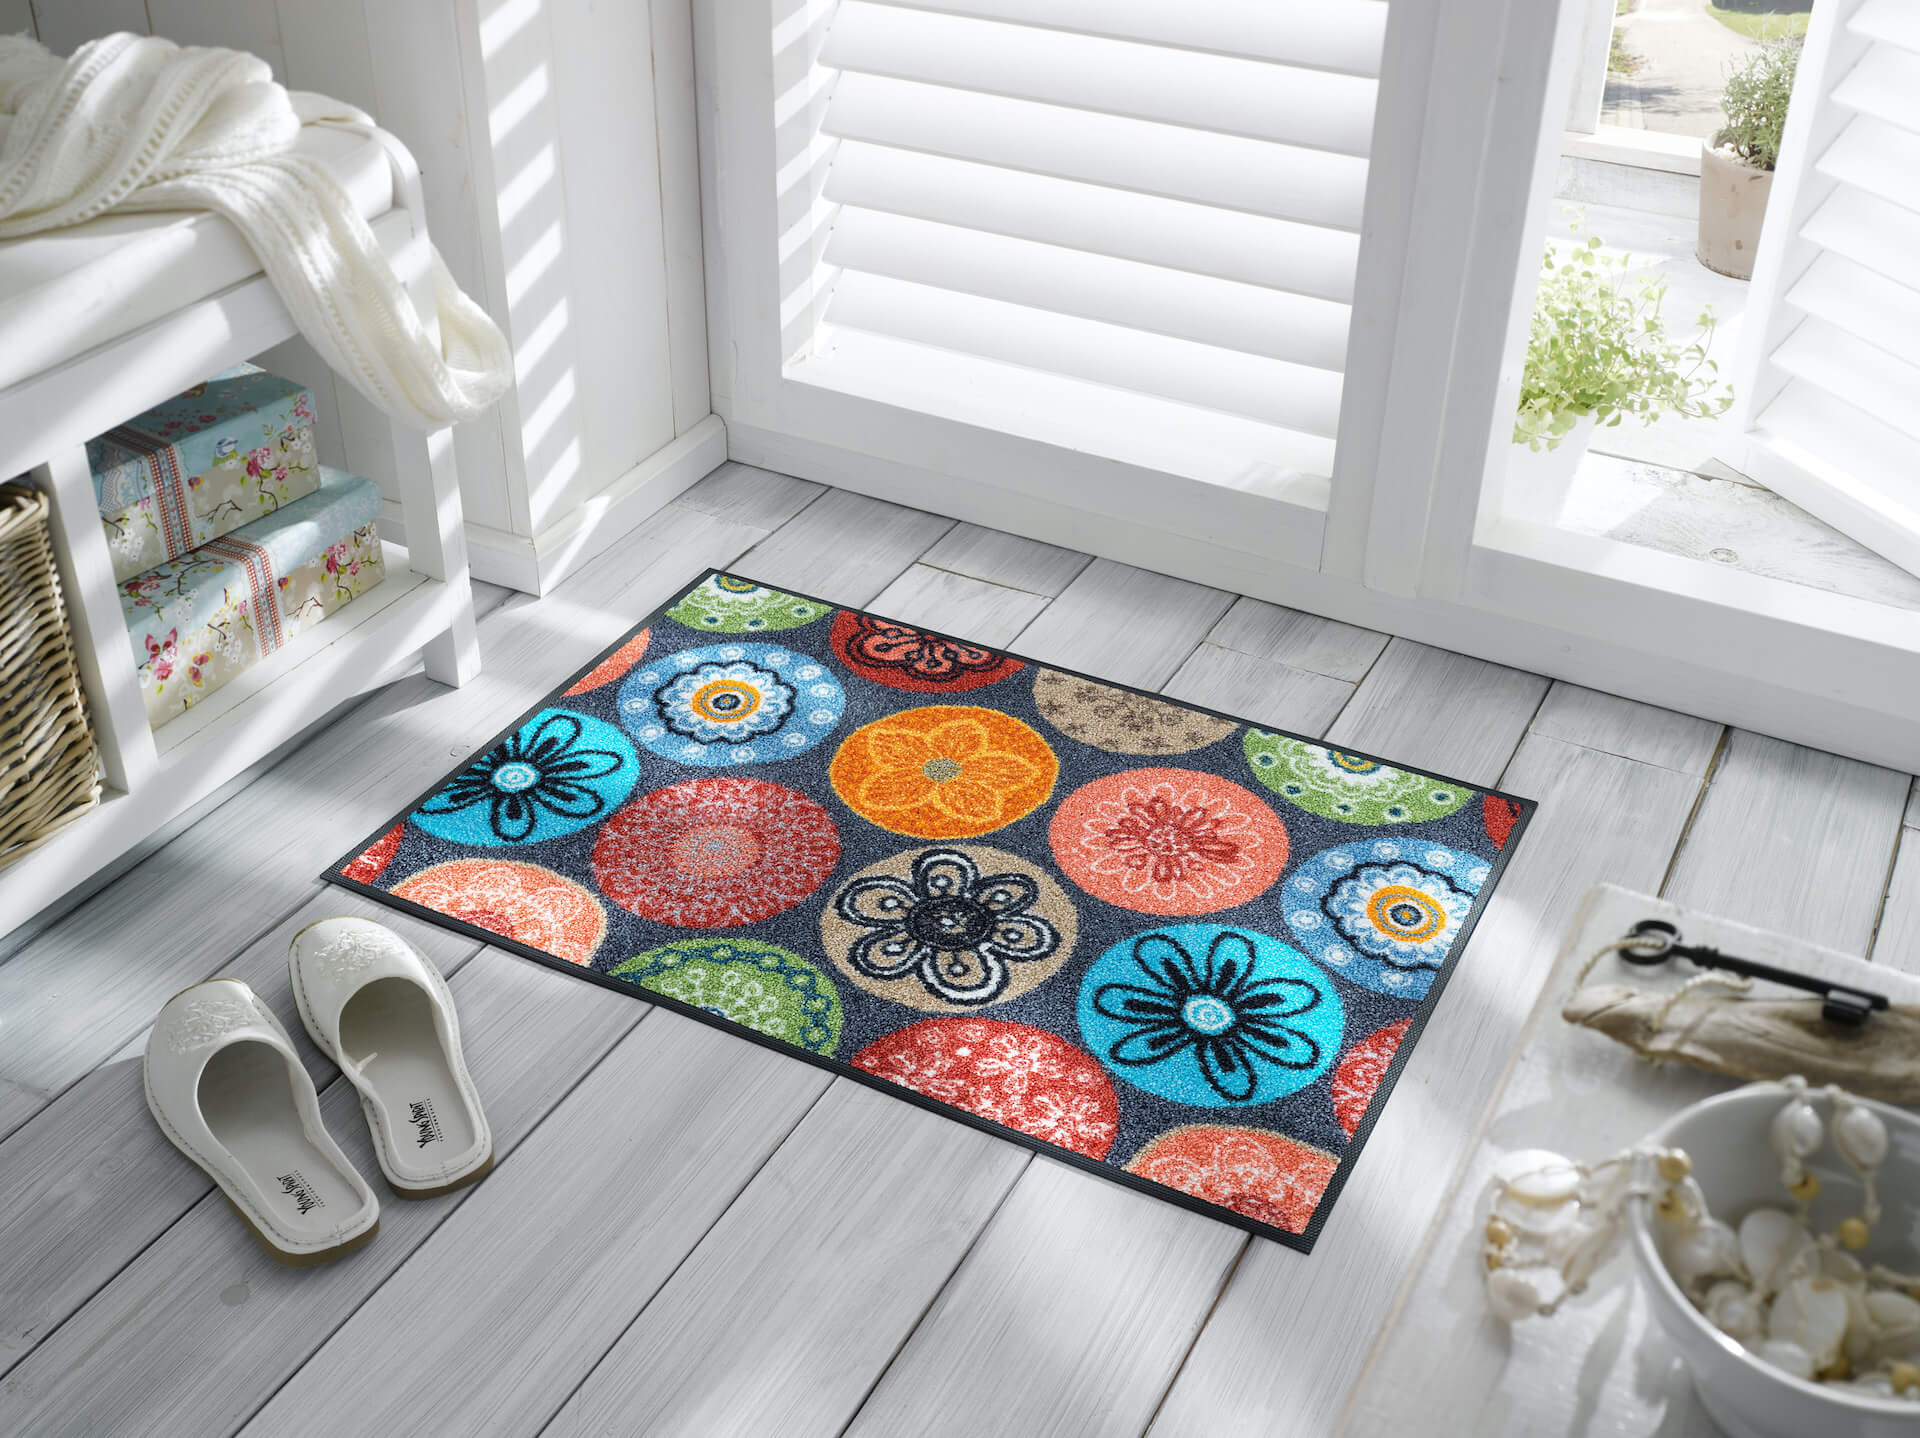 Sauberlaufmatte Coralis, wash & dry Design Fußmatte, mehrfarbig, 050 x 075 cm, Interieurbild